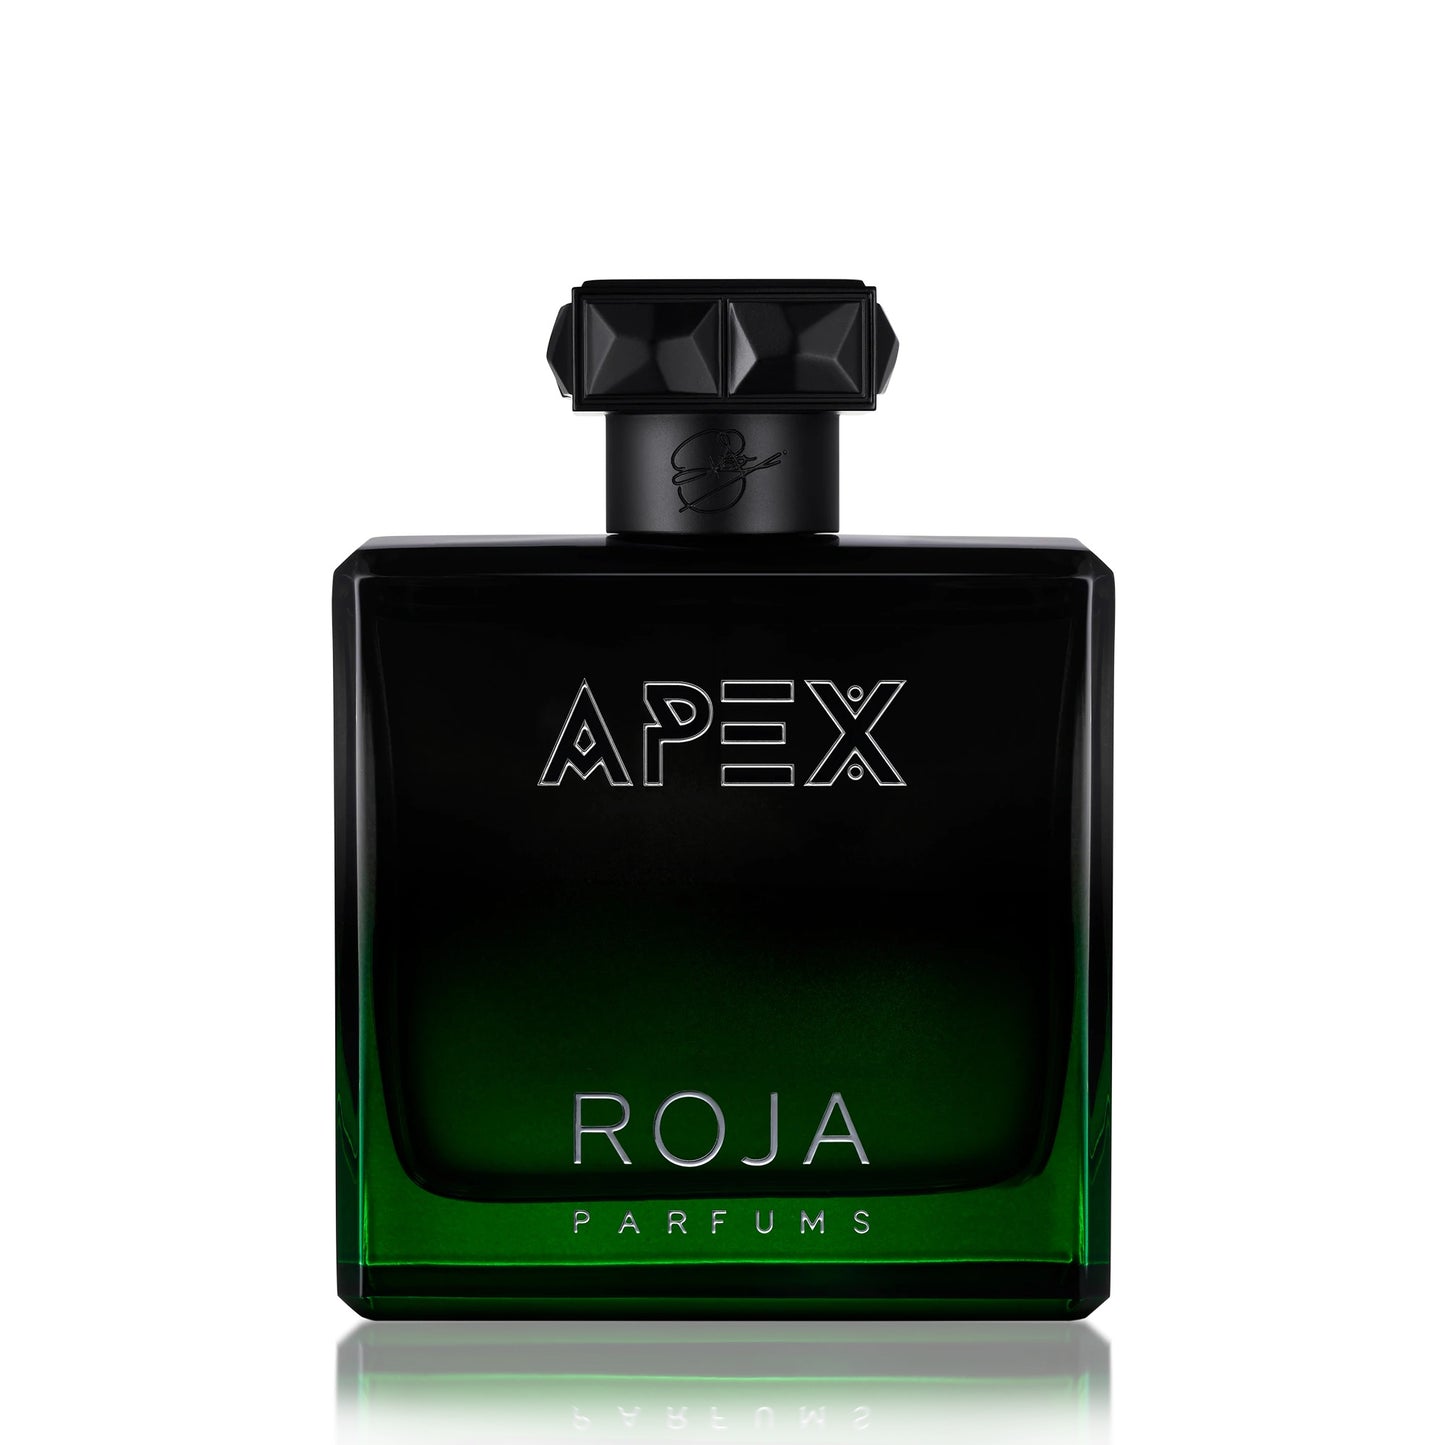 Roja Parfums - Apex - Parfum Cologne.